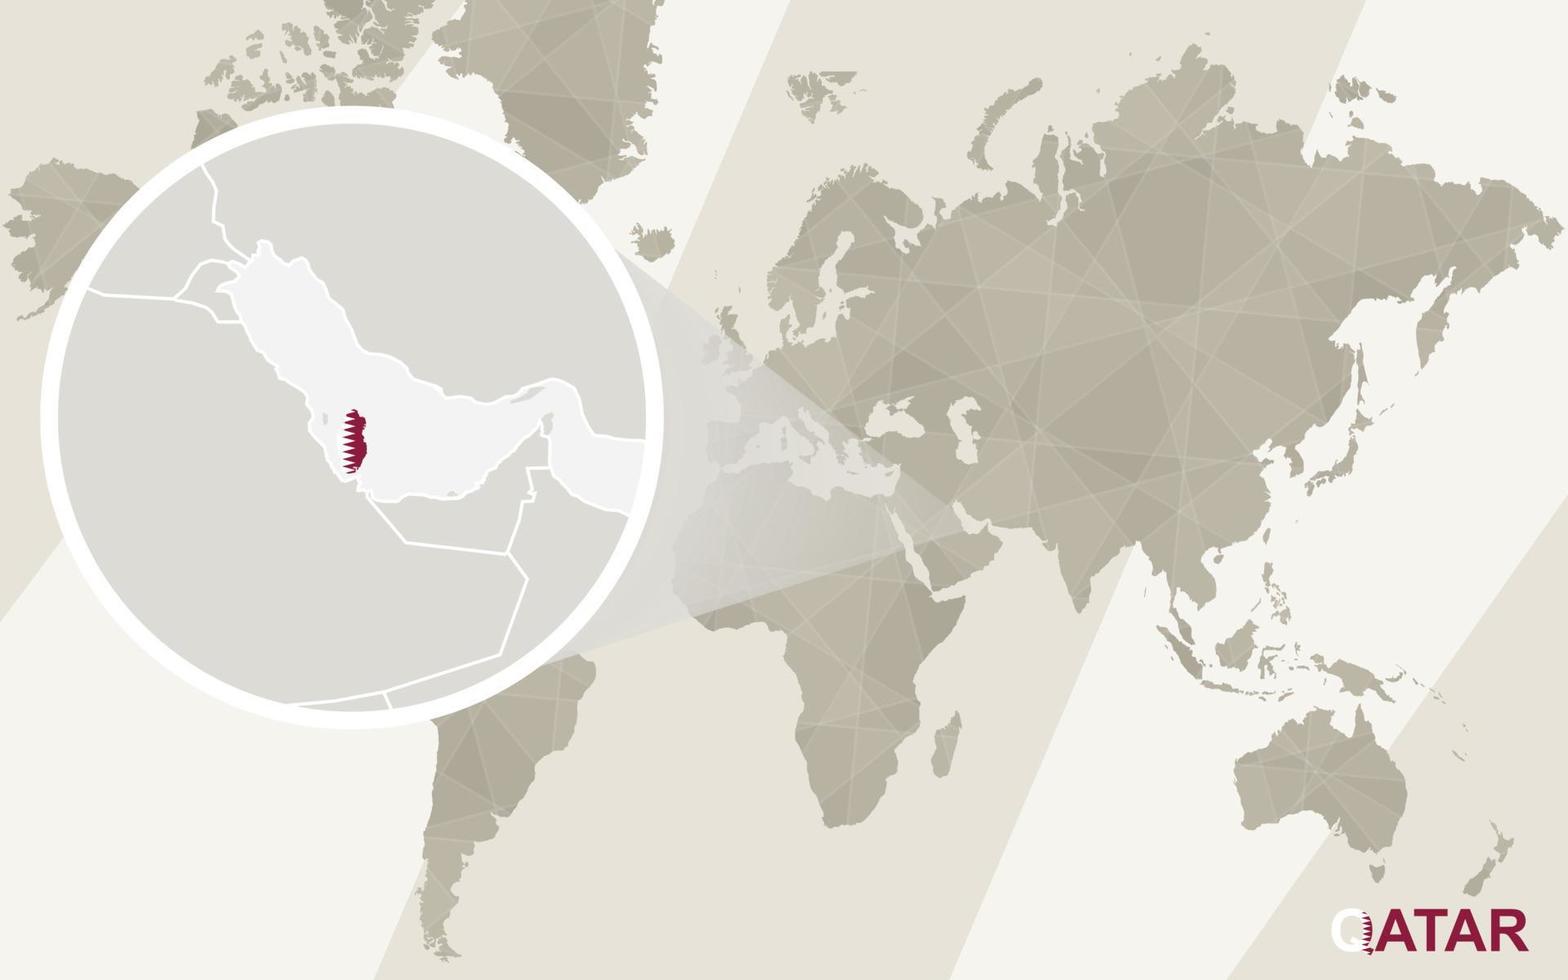 zoom en el mapa y la bandera de qatar. mapa del mundo. vector